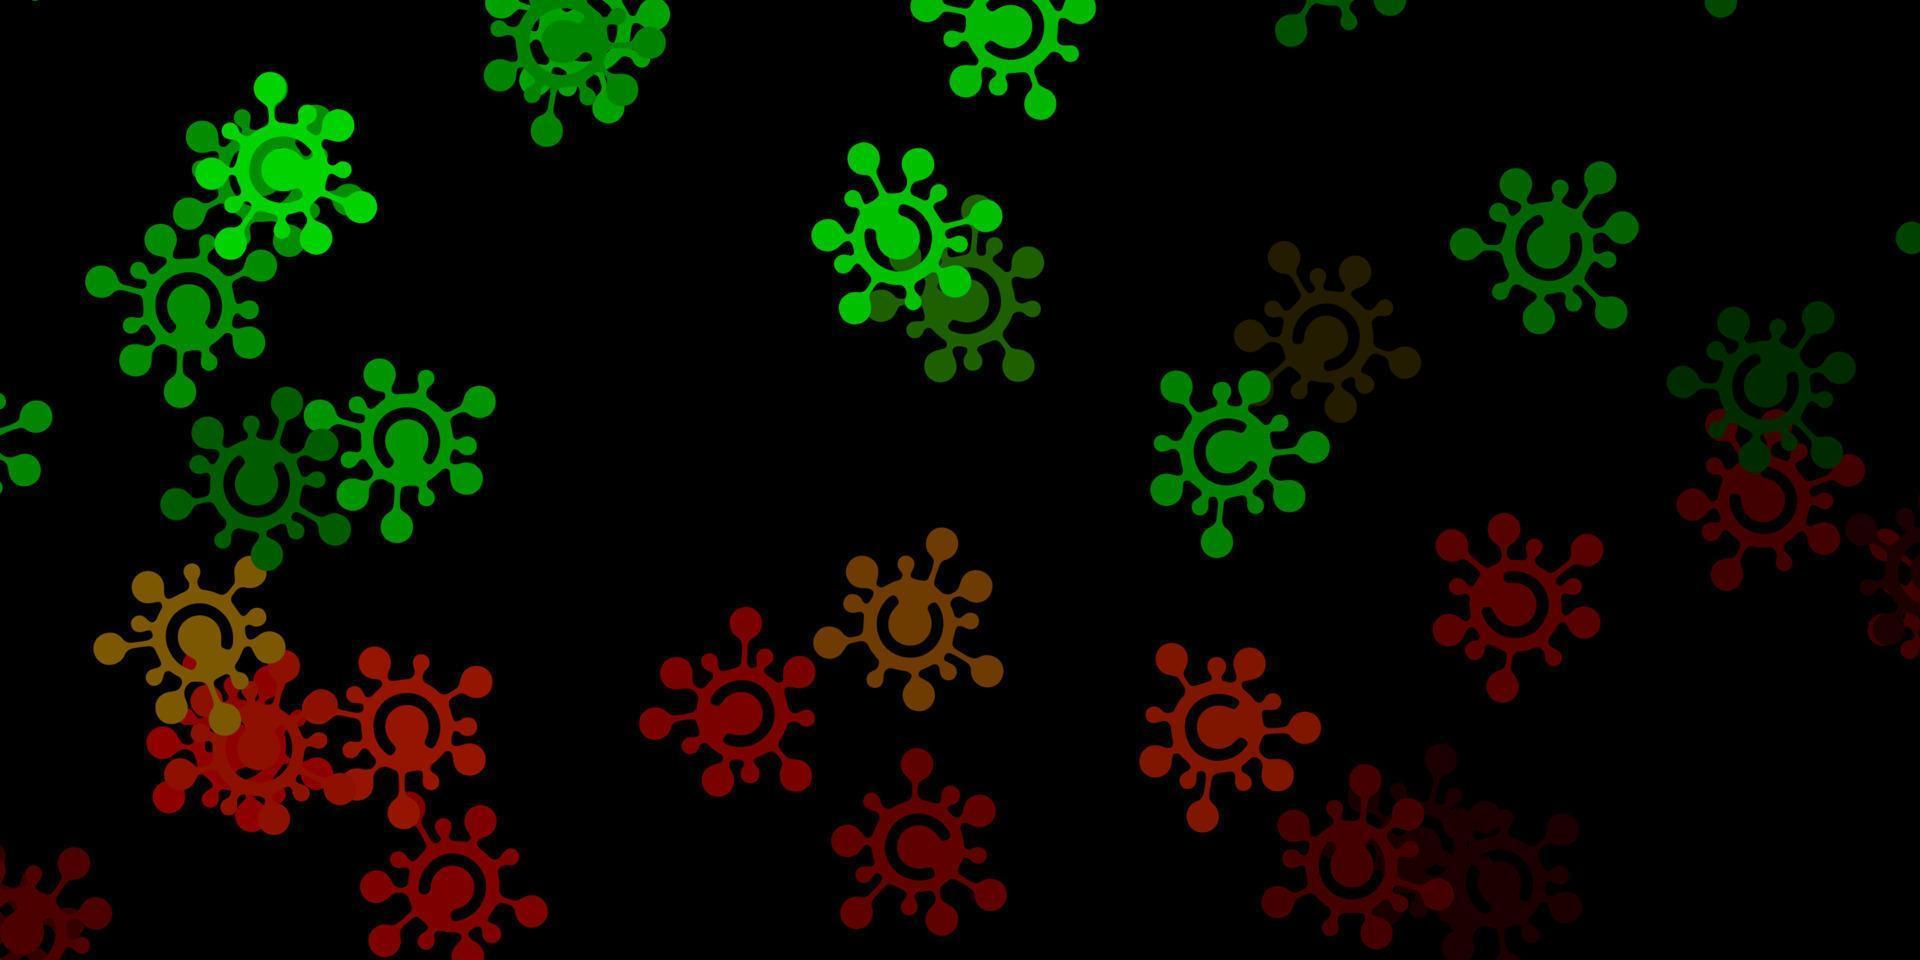 sfondo vettoriale verde scuro, rosso con simboli covid-19.